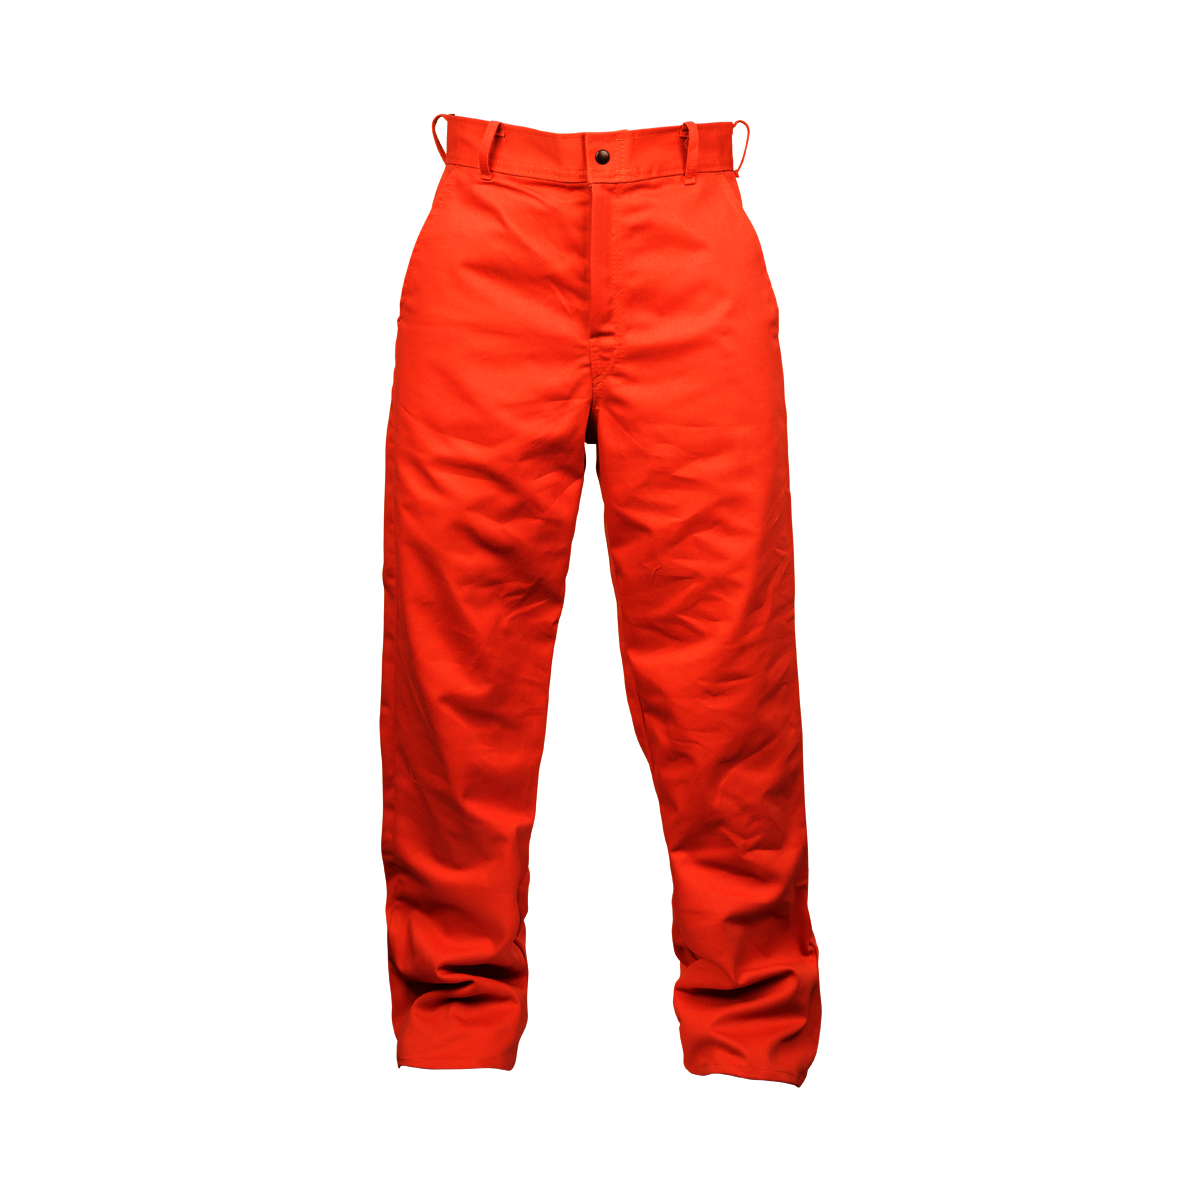 Airgas Til6700d3632 Tillman 36 X 32 Orange Westex Fr 7a Cotton Flame Resistant Pants With Zipper Closure